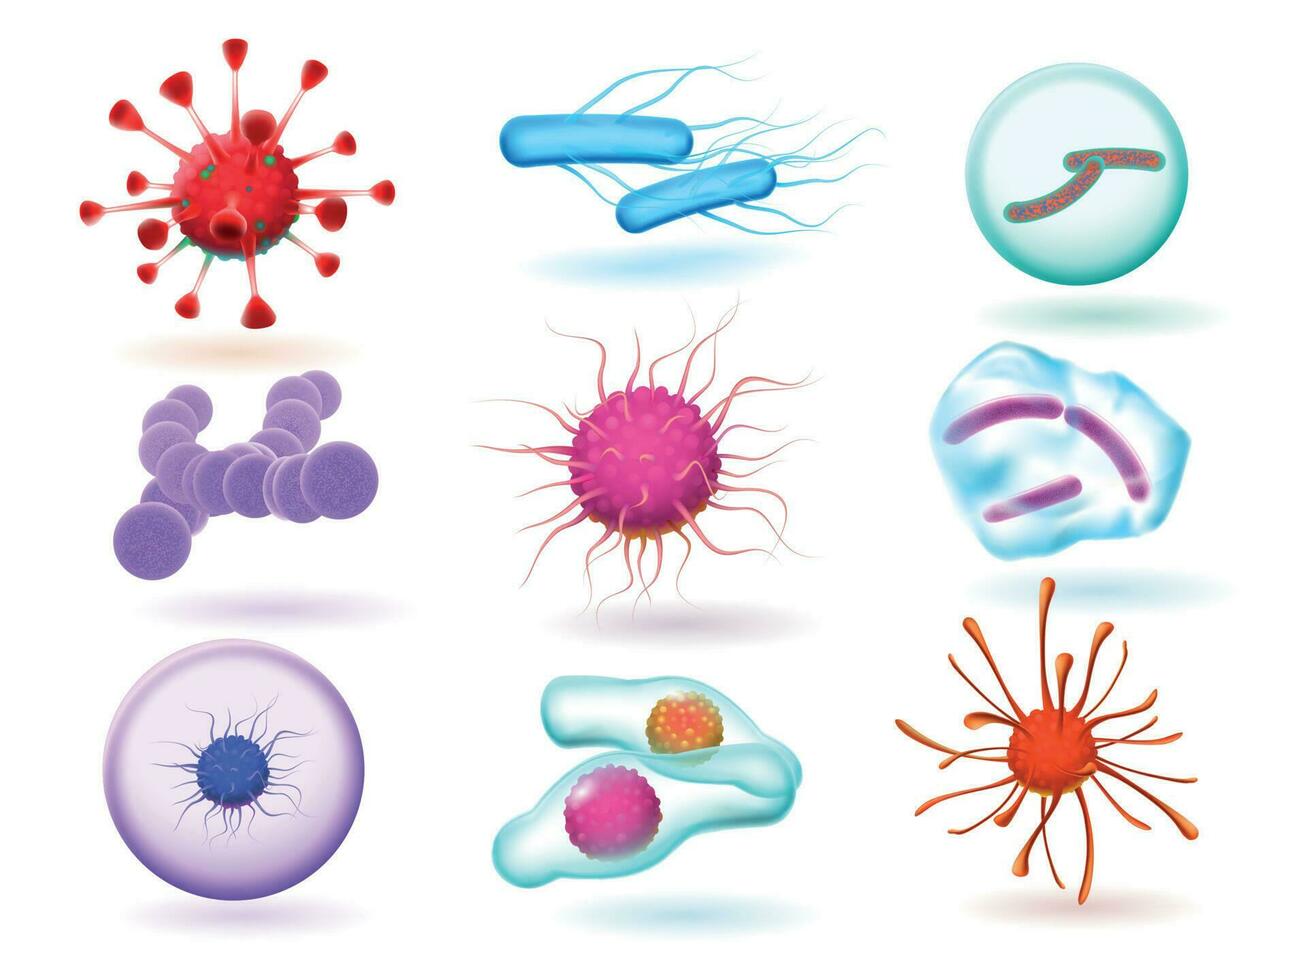 réaliste 3d microbiologie bactéries, divers virus, la nature micro-organisme et science de microscopique virus isolé vecteur ensemble